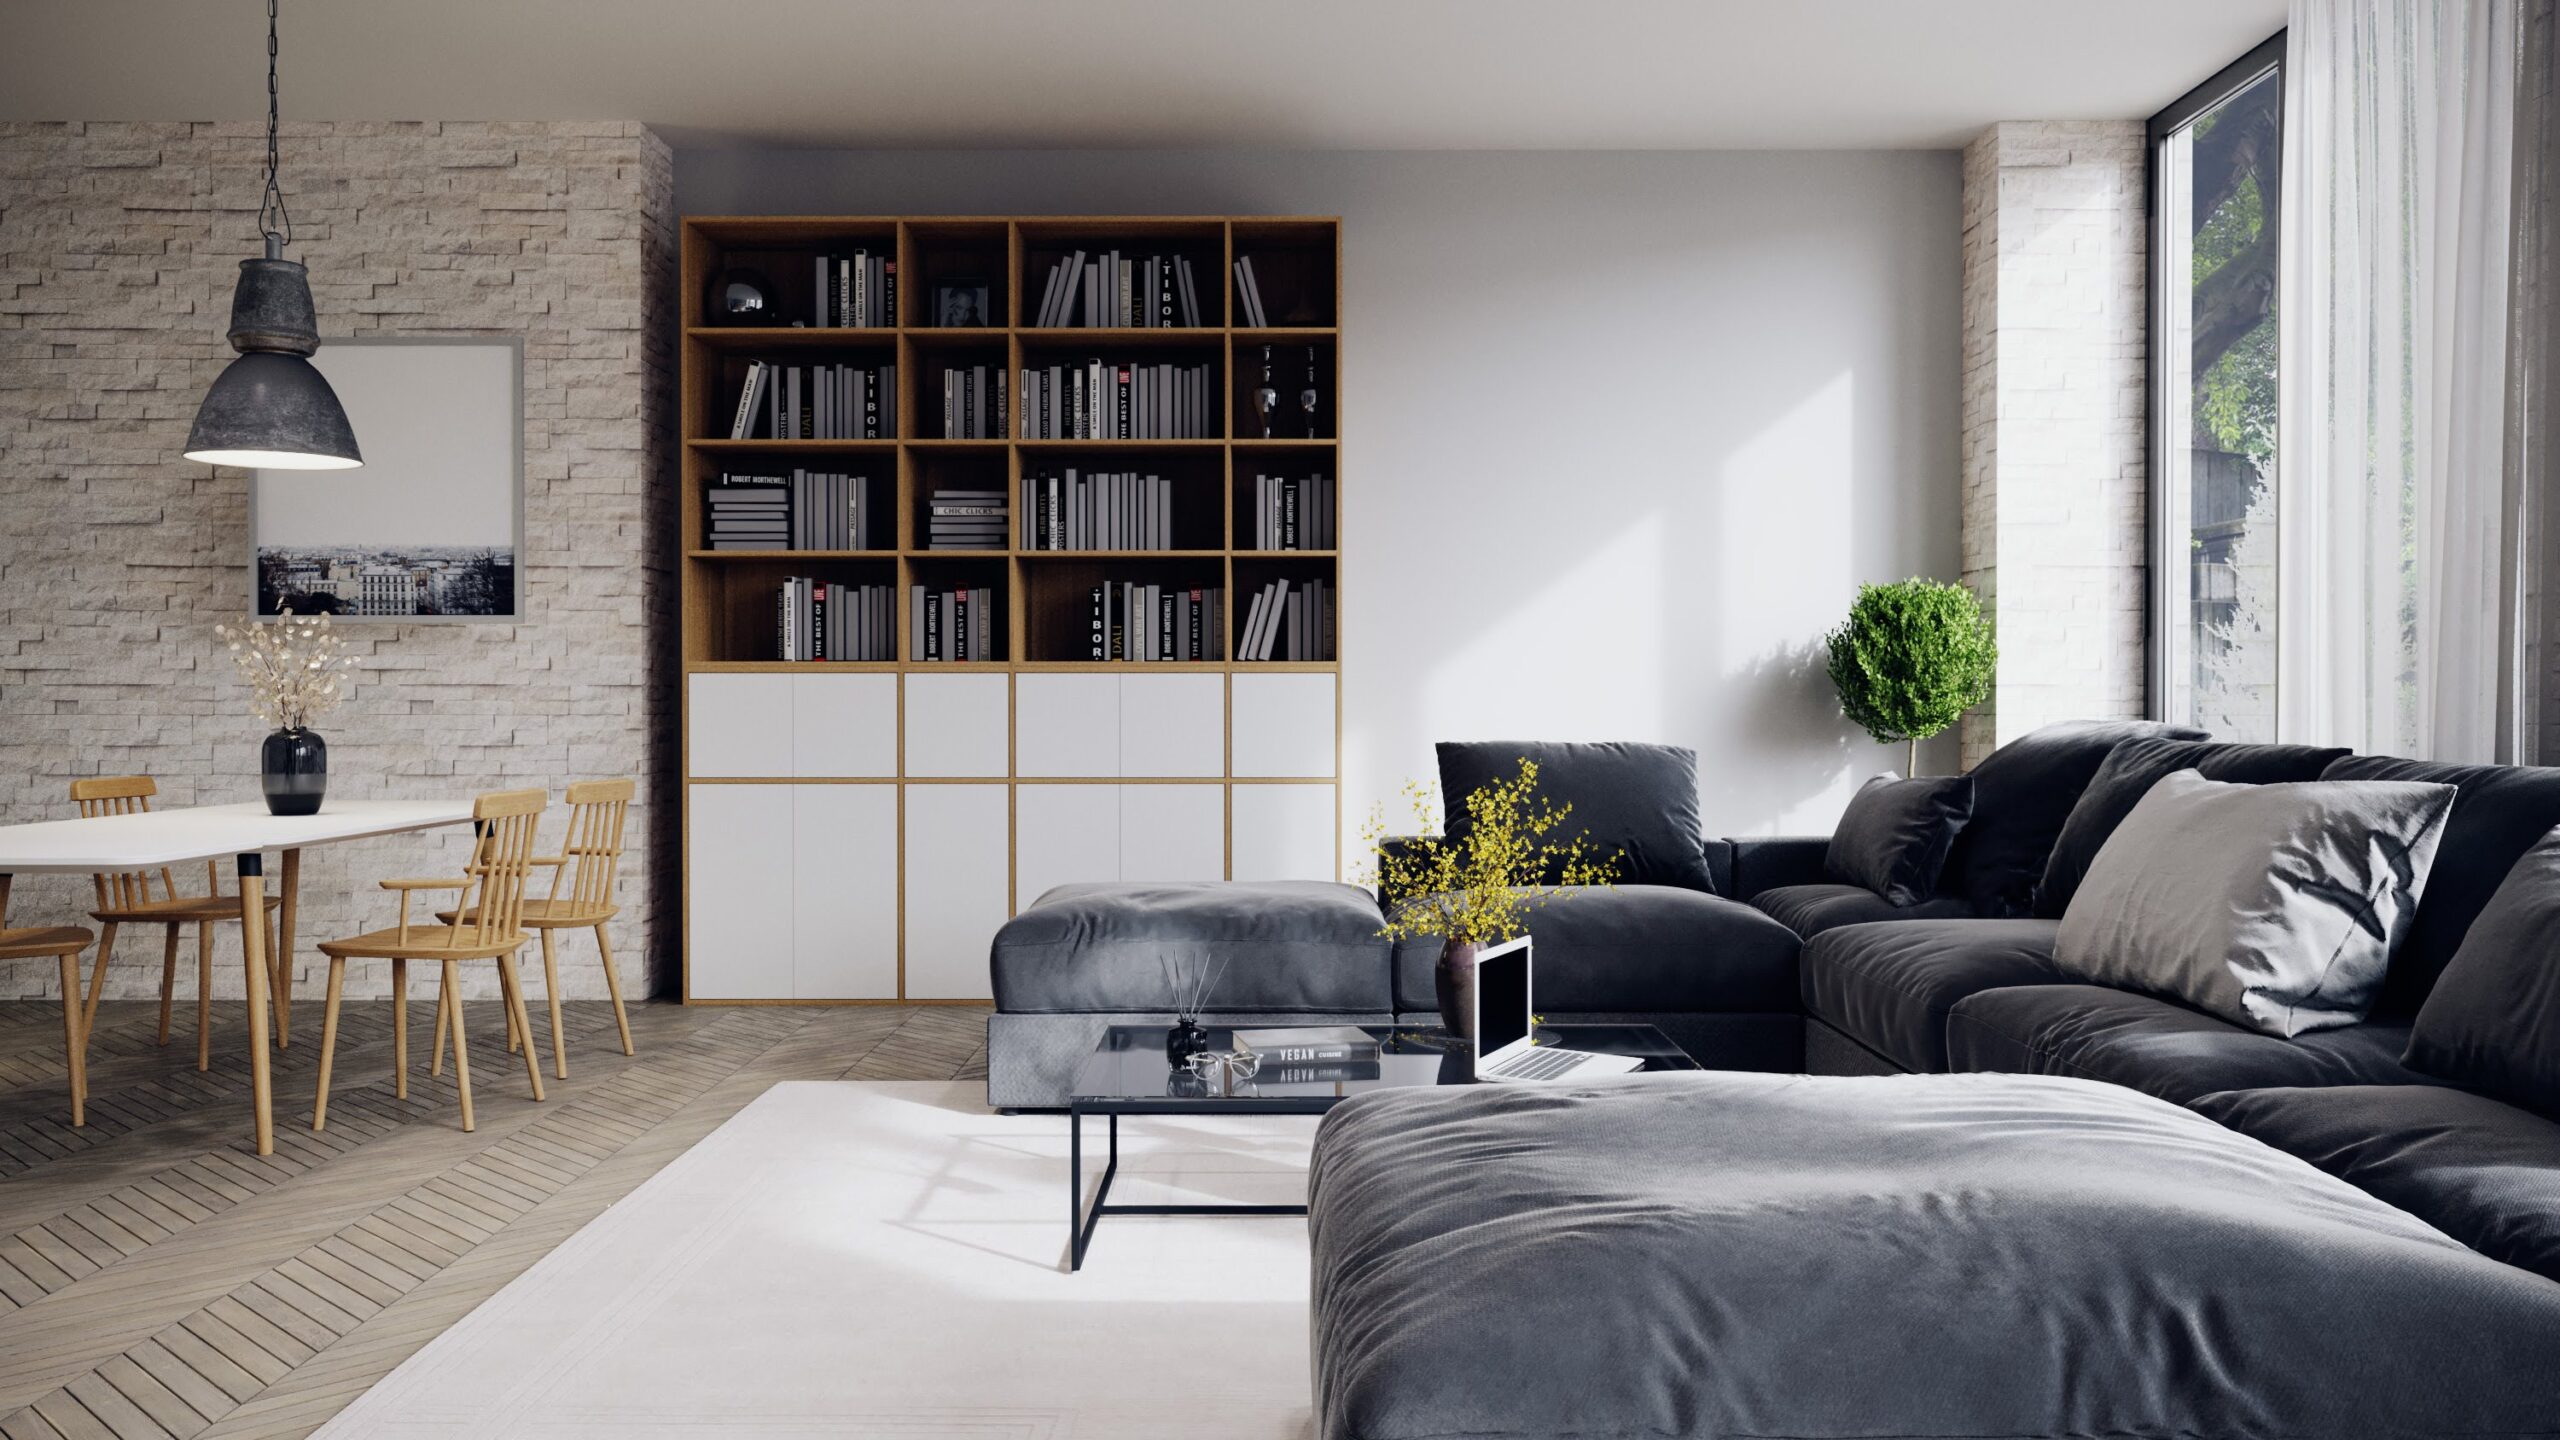 Quels coussins pour meubles en palette choisir ? – Blog BUT